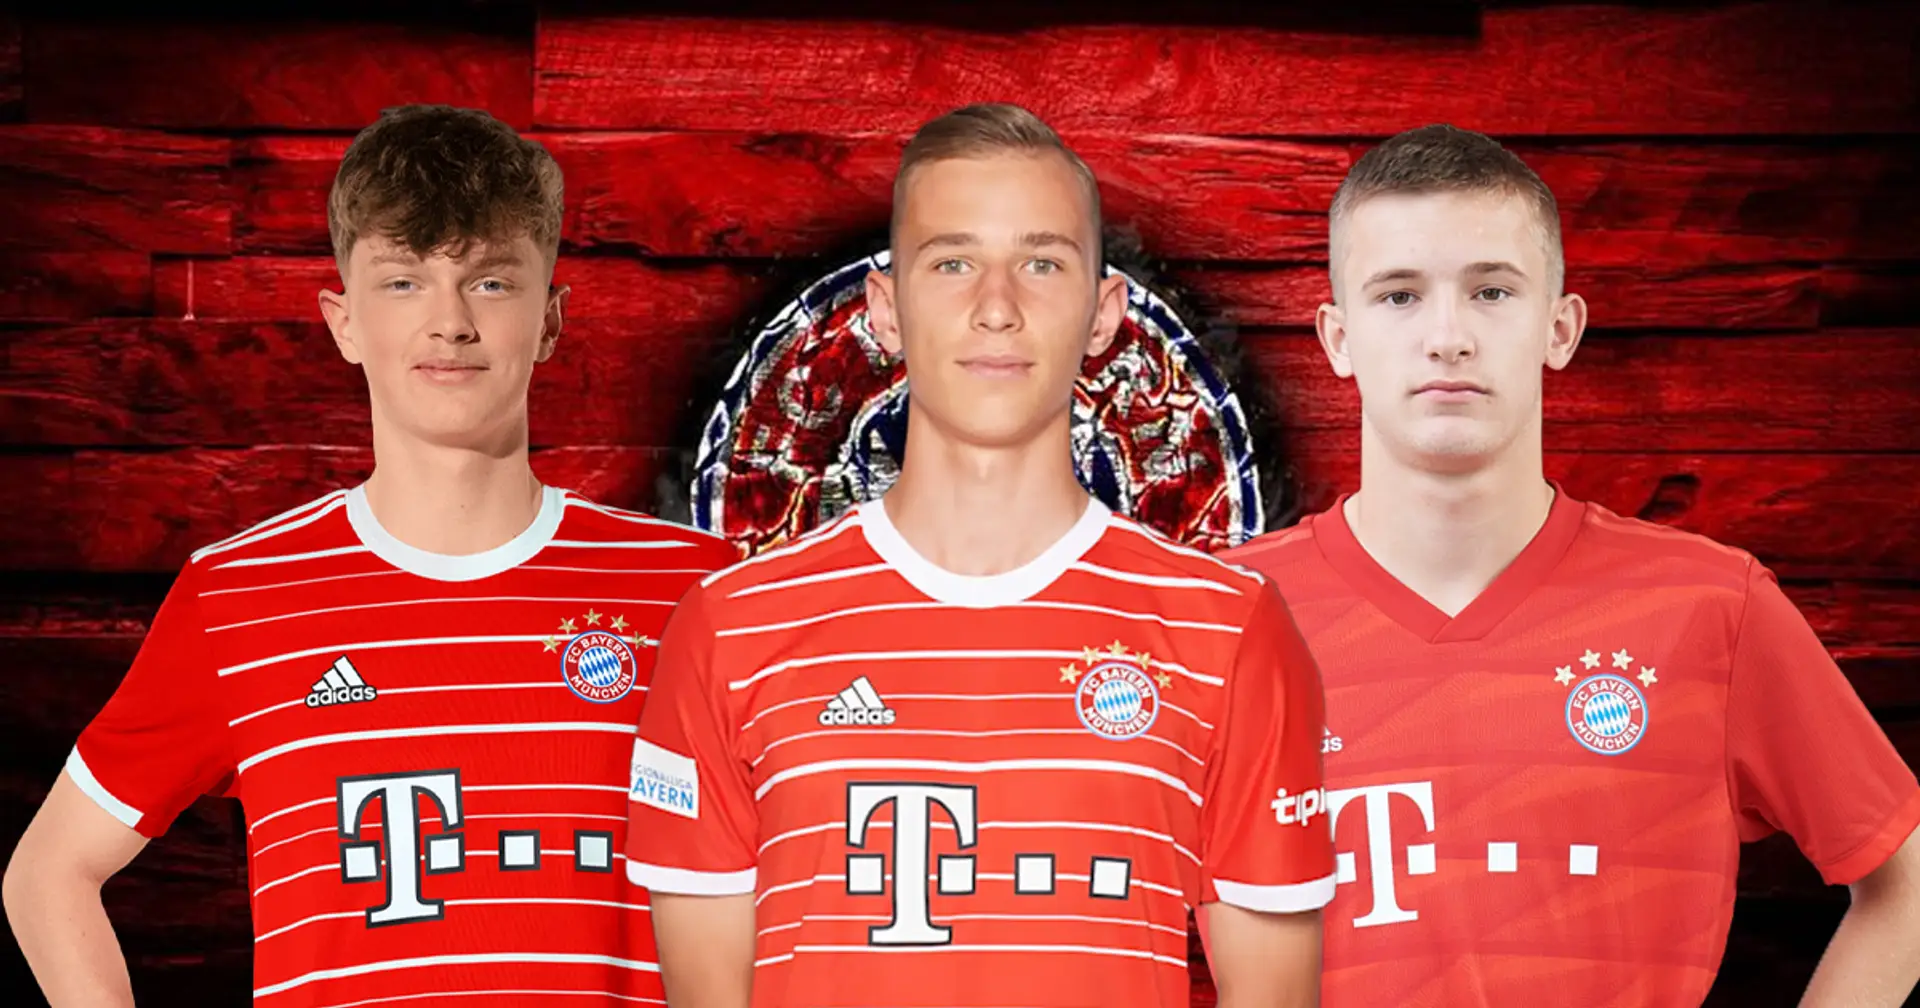 "Leistungsdichte ist extrem hoch": Sauer erklärt, warum Youngster es schwer haben, sich bei Bayern durchzusetzen